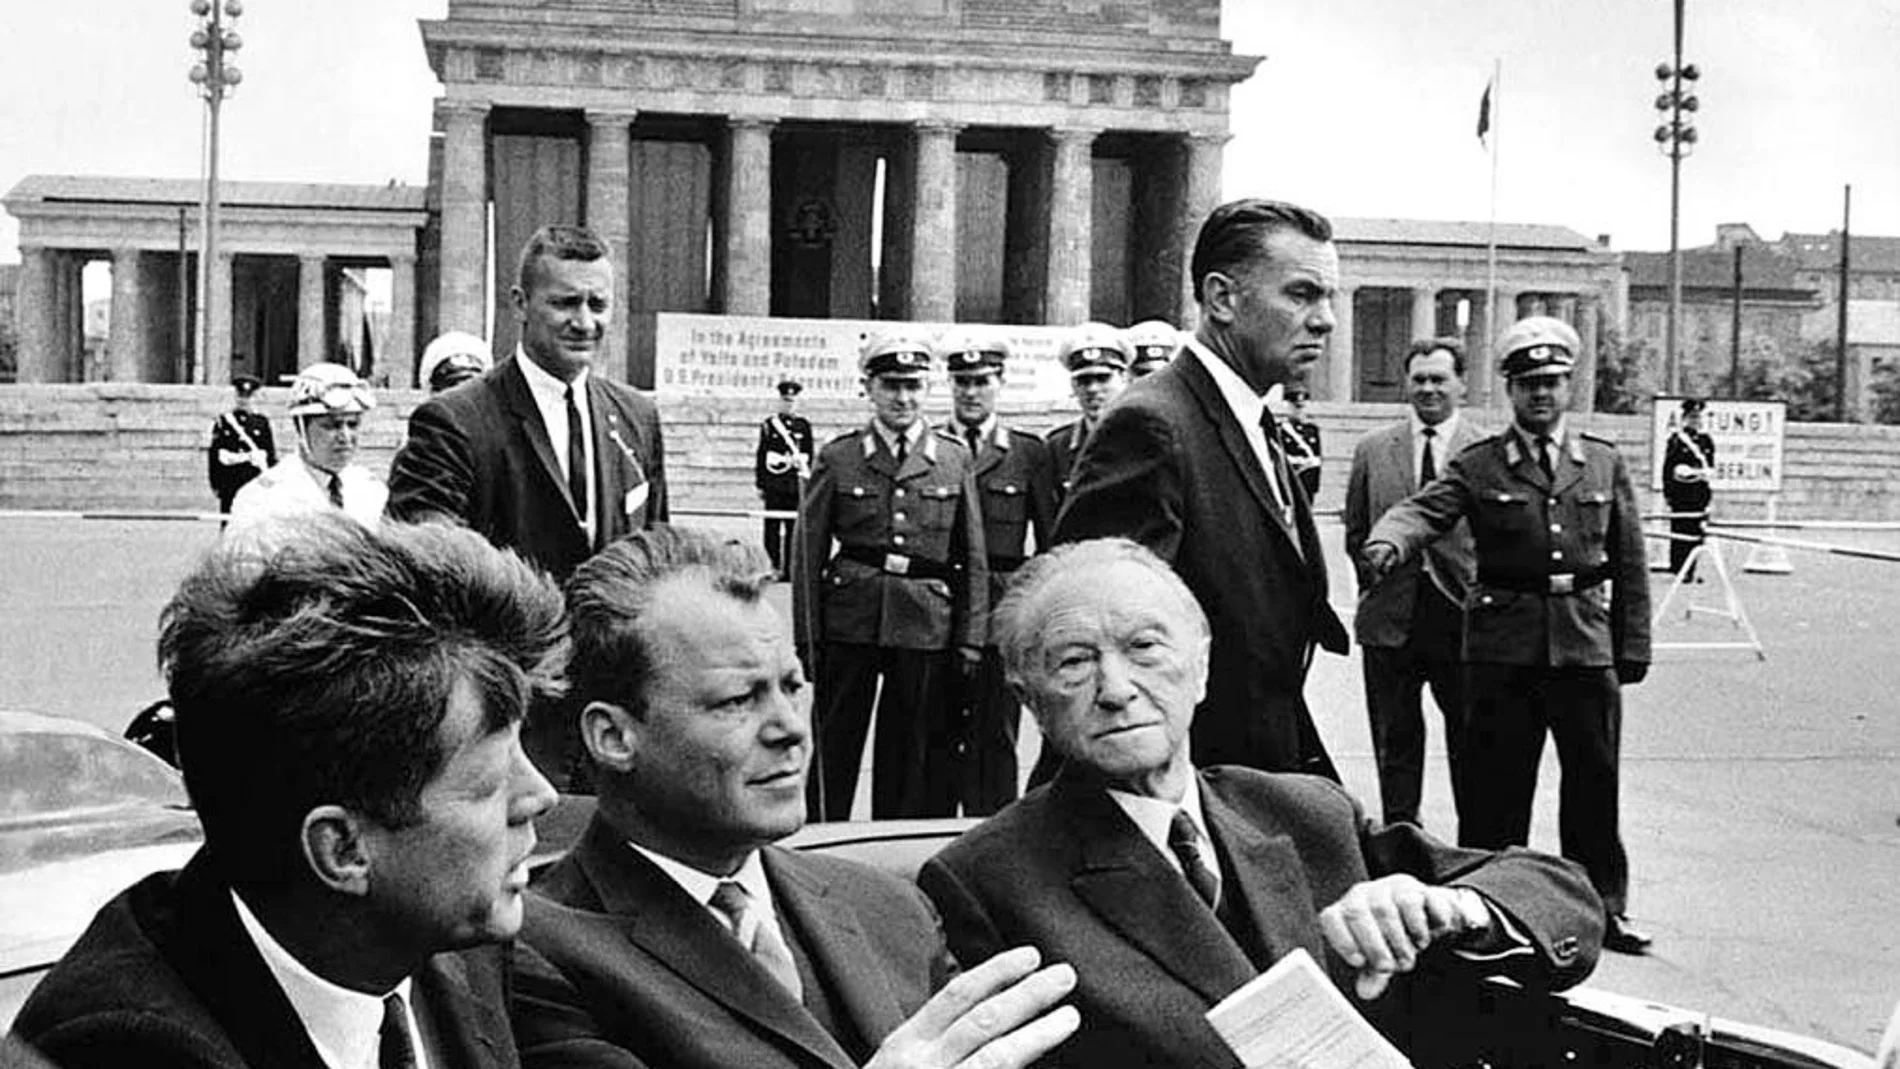 Tres figuras emblemáticas. John F. Kennedy, presidente de los Estados Unidos; Willy Brandt, alcalde de Berlín; y Konrad Adenauer, canciller de la República Federal de Alemania y constructor de la Europa de posguerrra